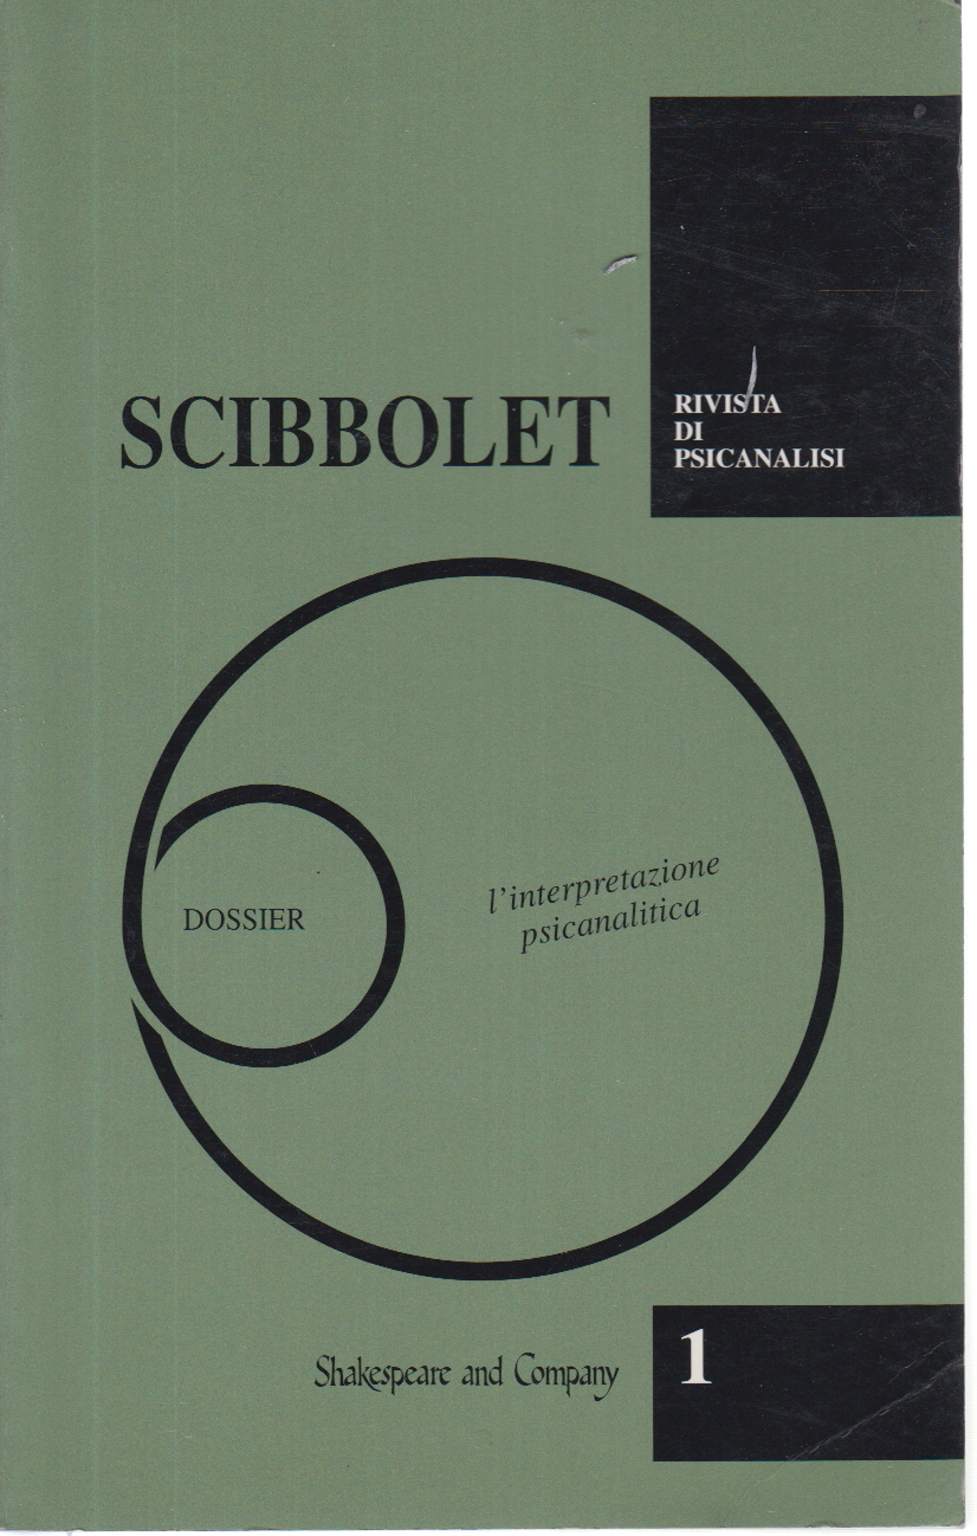 Scibbolet no. 1 1994, s.a.